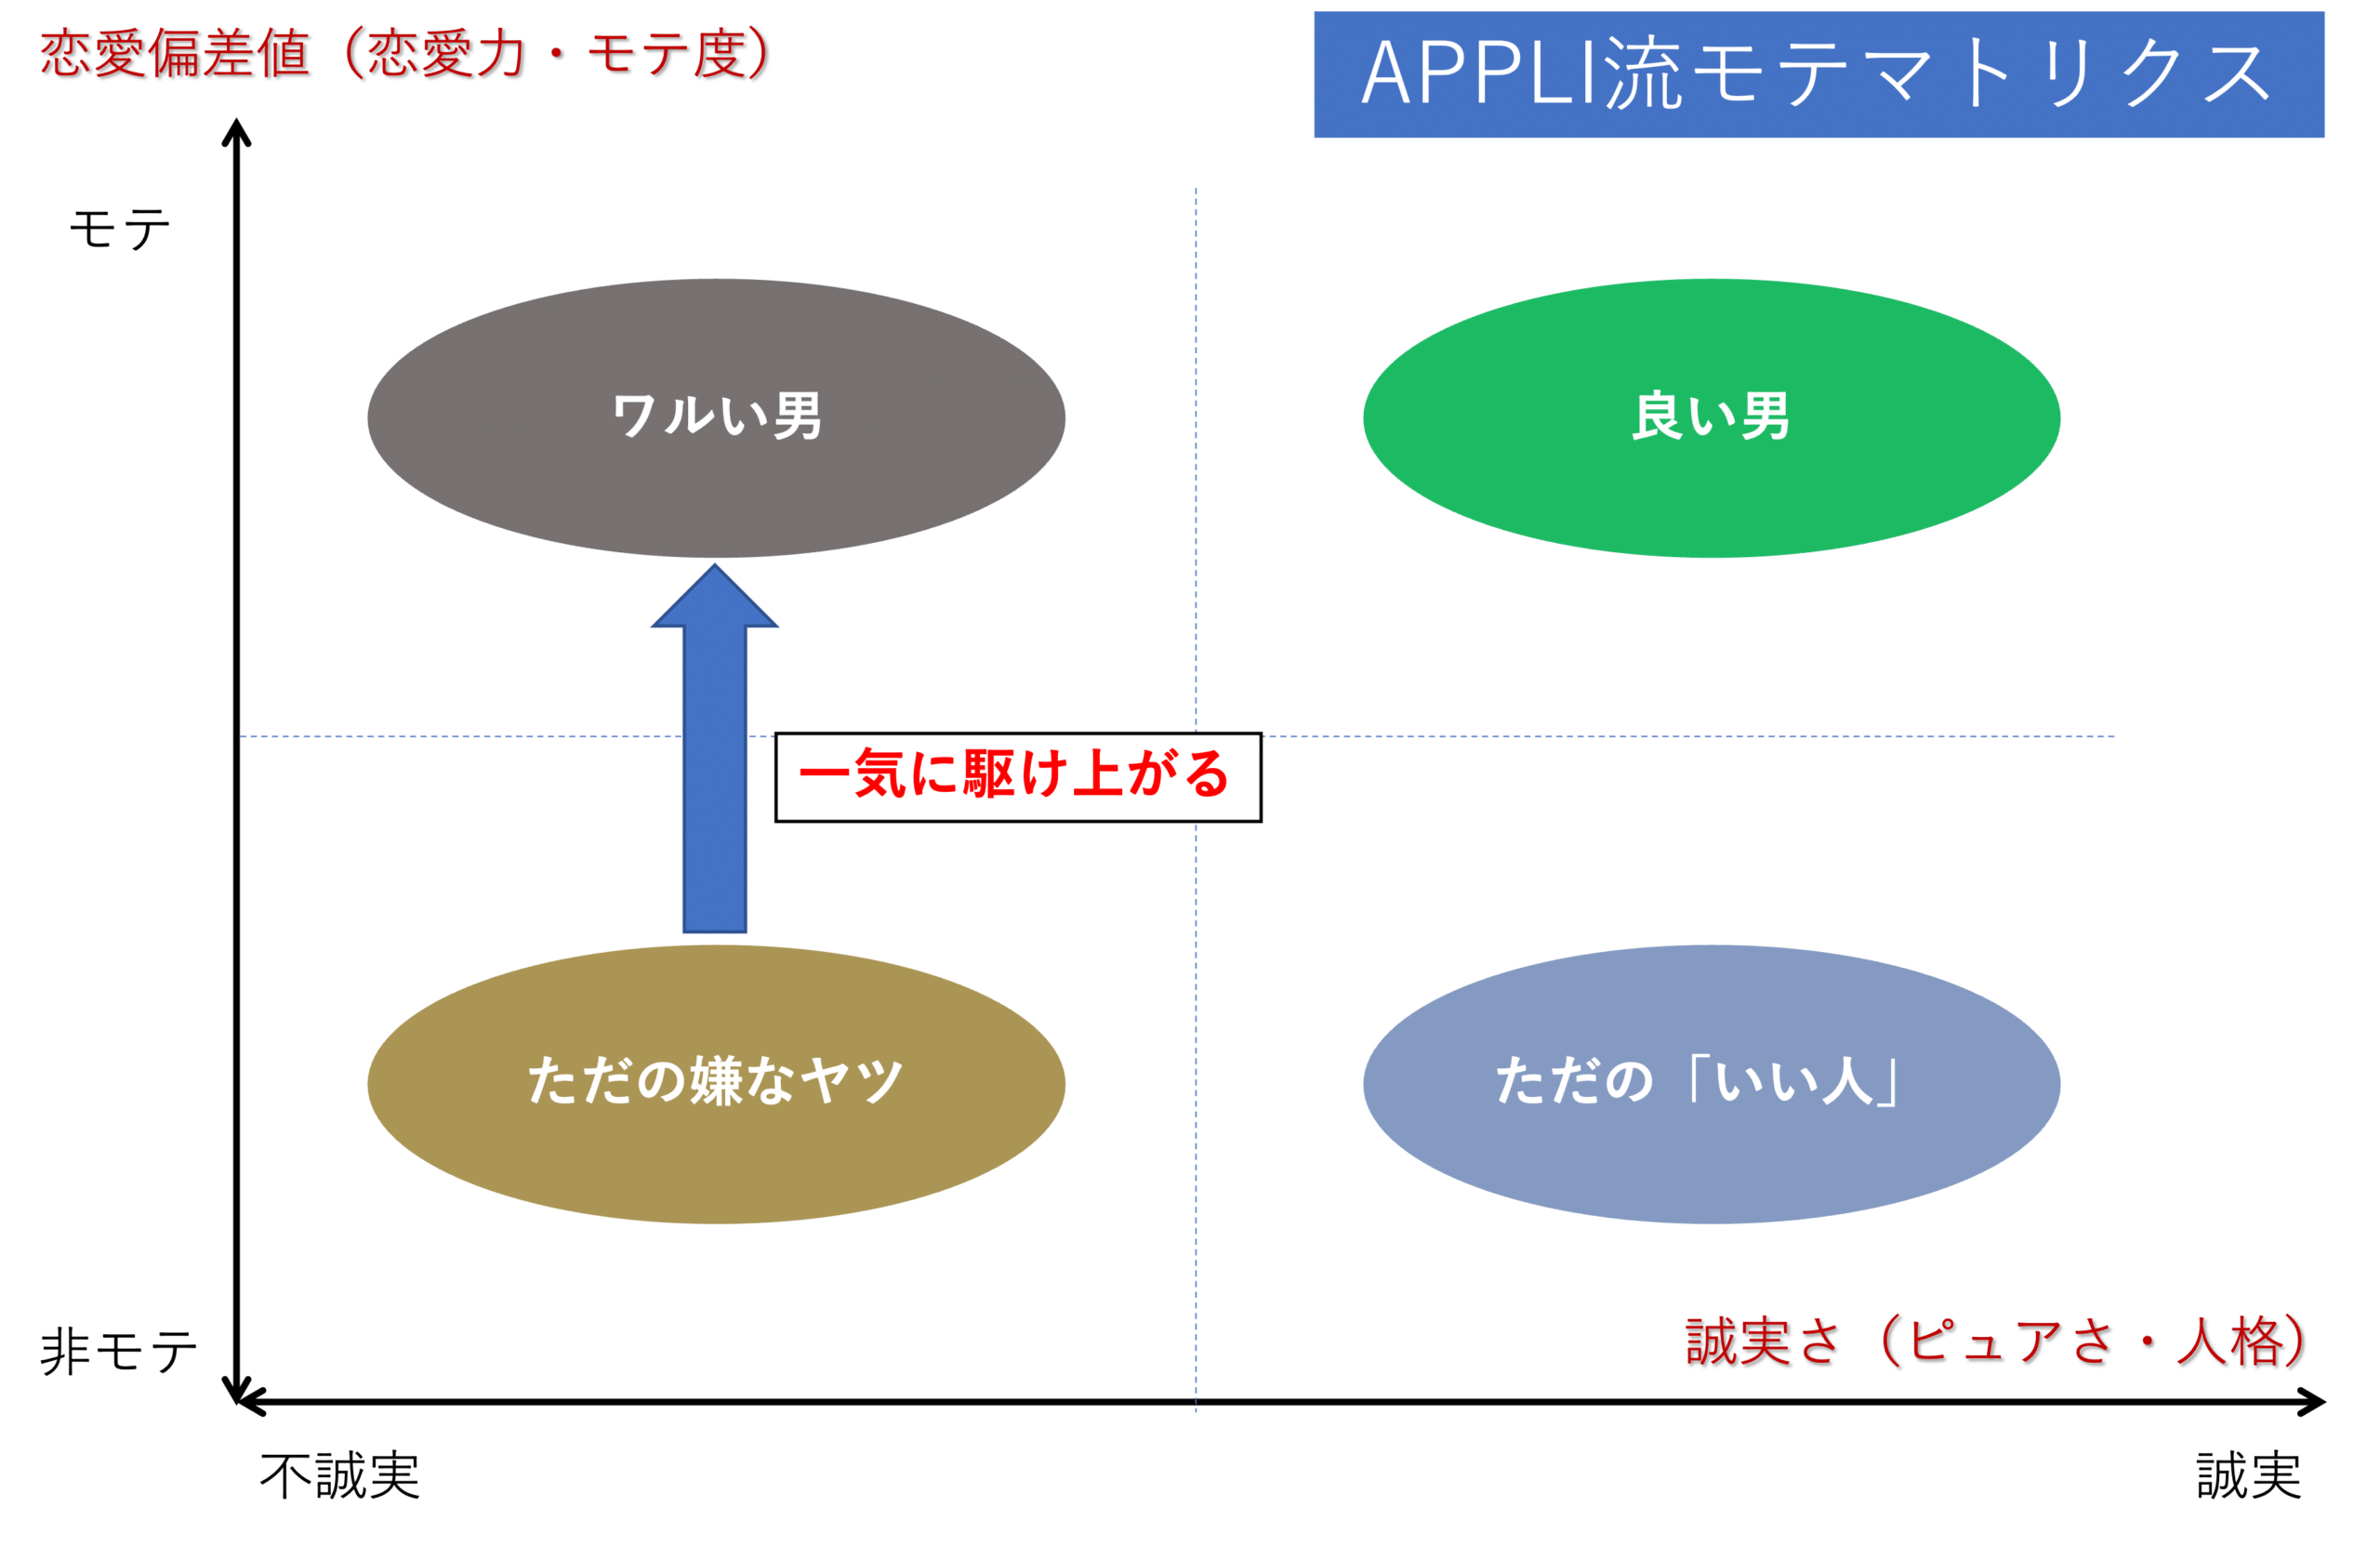 APPLI流モテマトリクス4-2